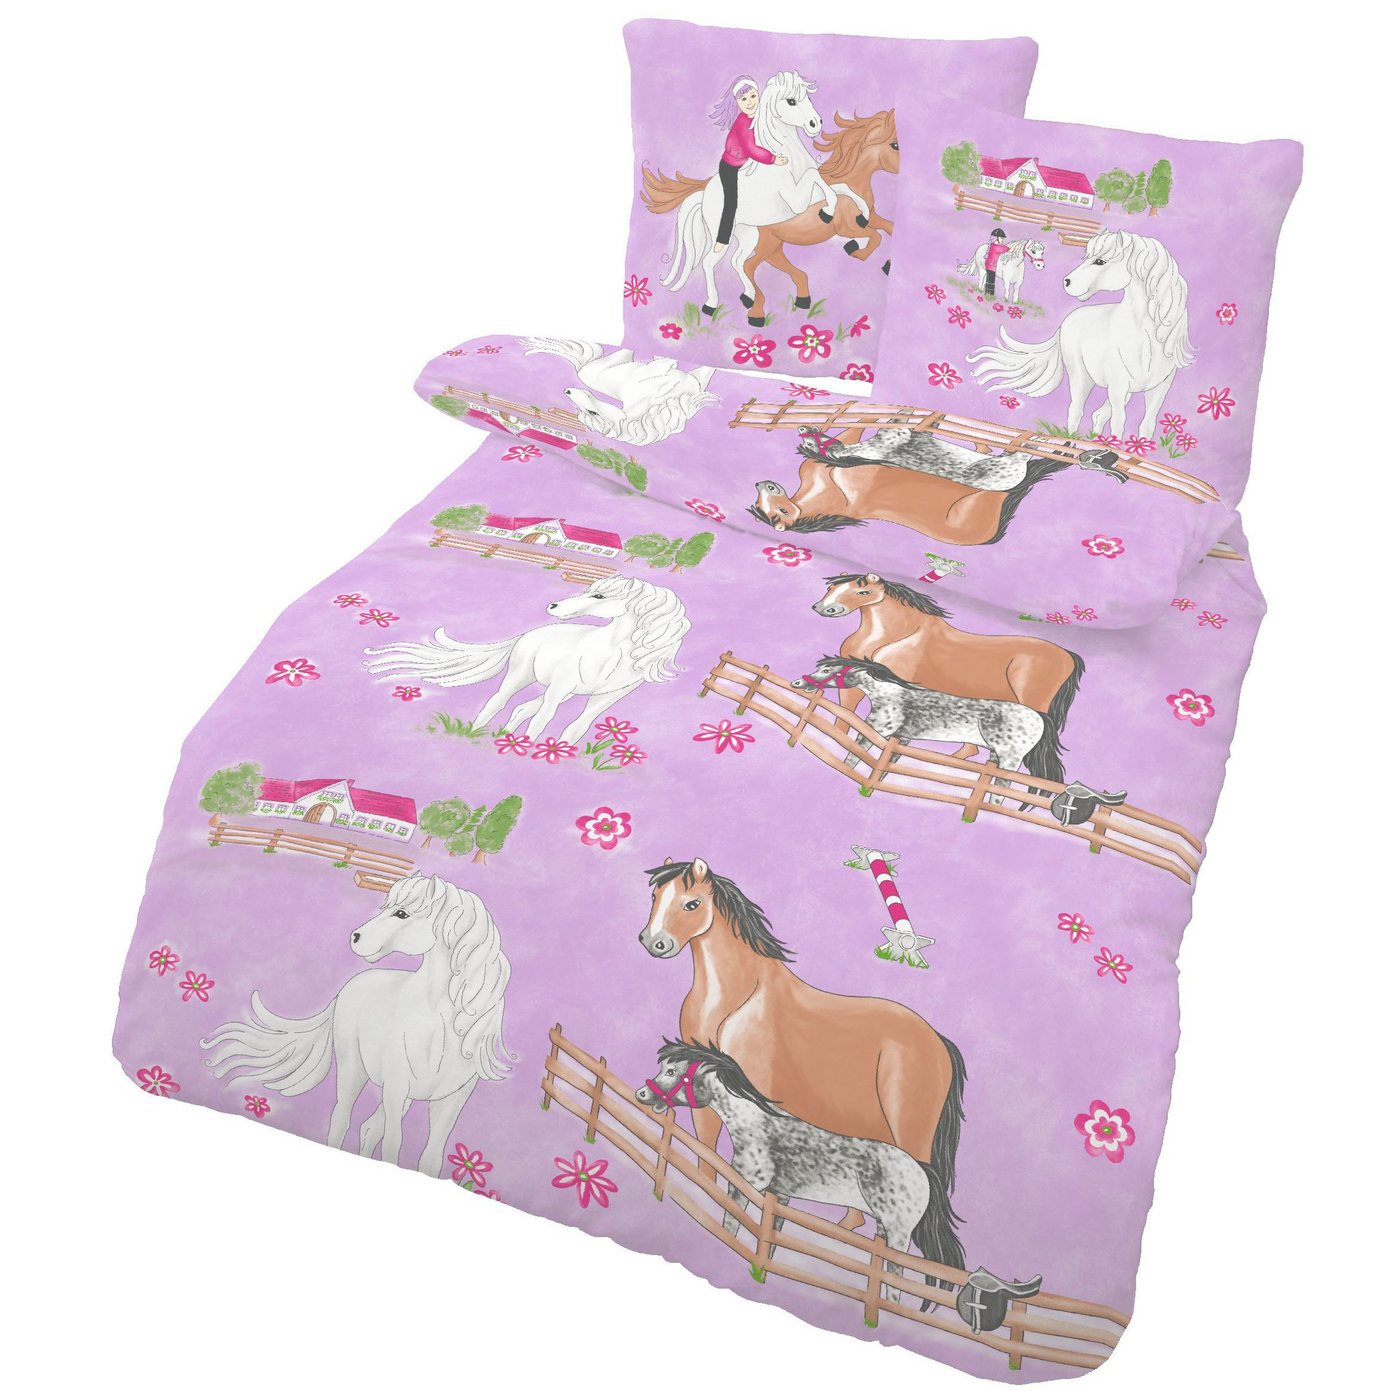 Kinderbettwäsche Pferde Bettwäsche 135x200 2tlg. - 100% Baumwolle - Pony Kinderbettwäsche für Mädchen - Renforce Bettwäsche-Set, LINKHOFF, Bügelfrei, Atmungsaktiv von LINKHOFF